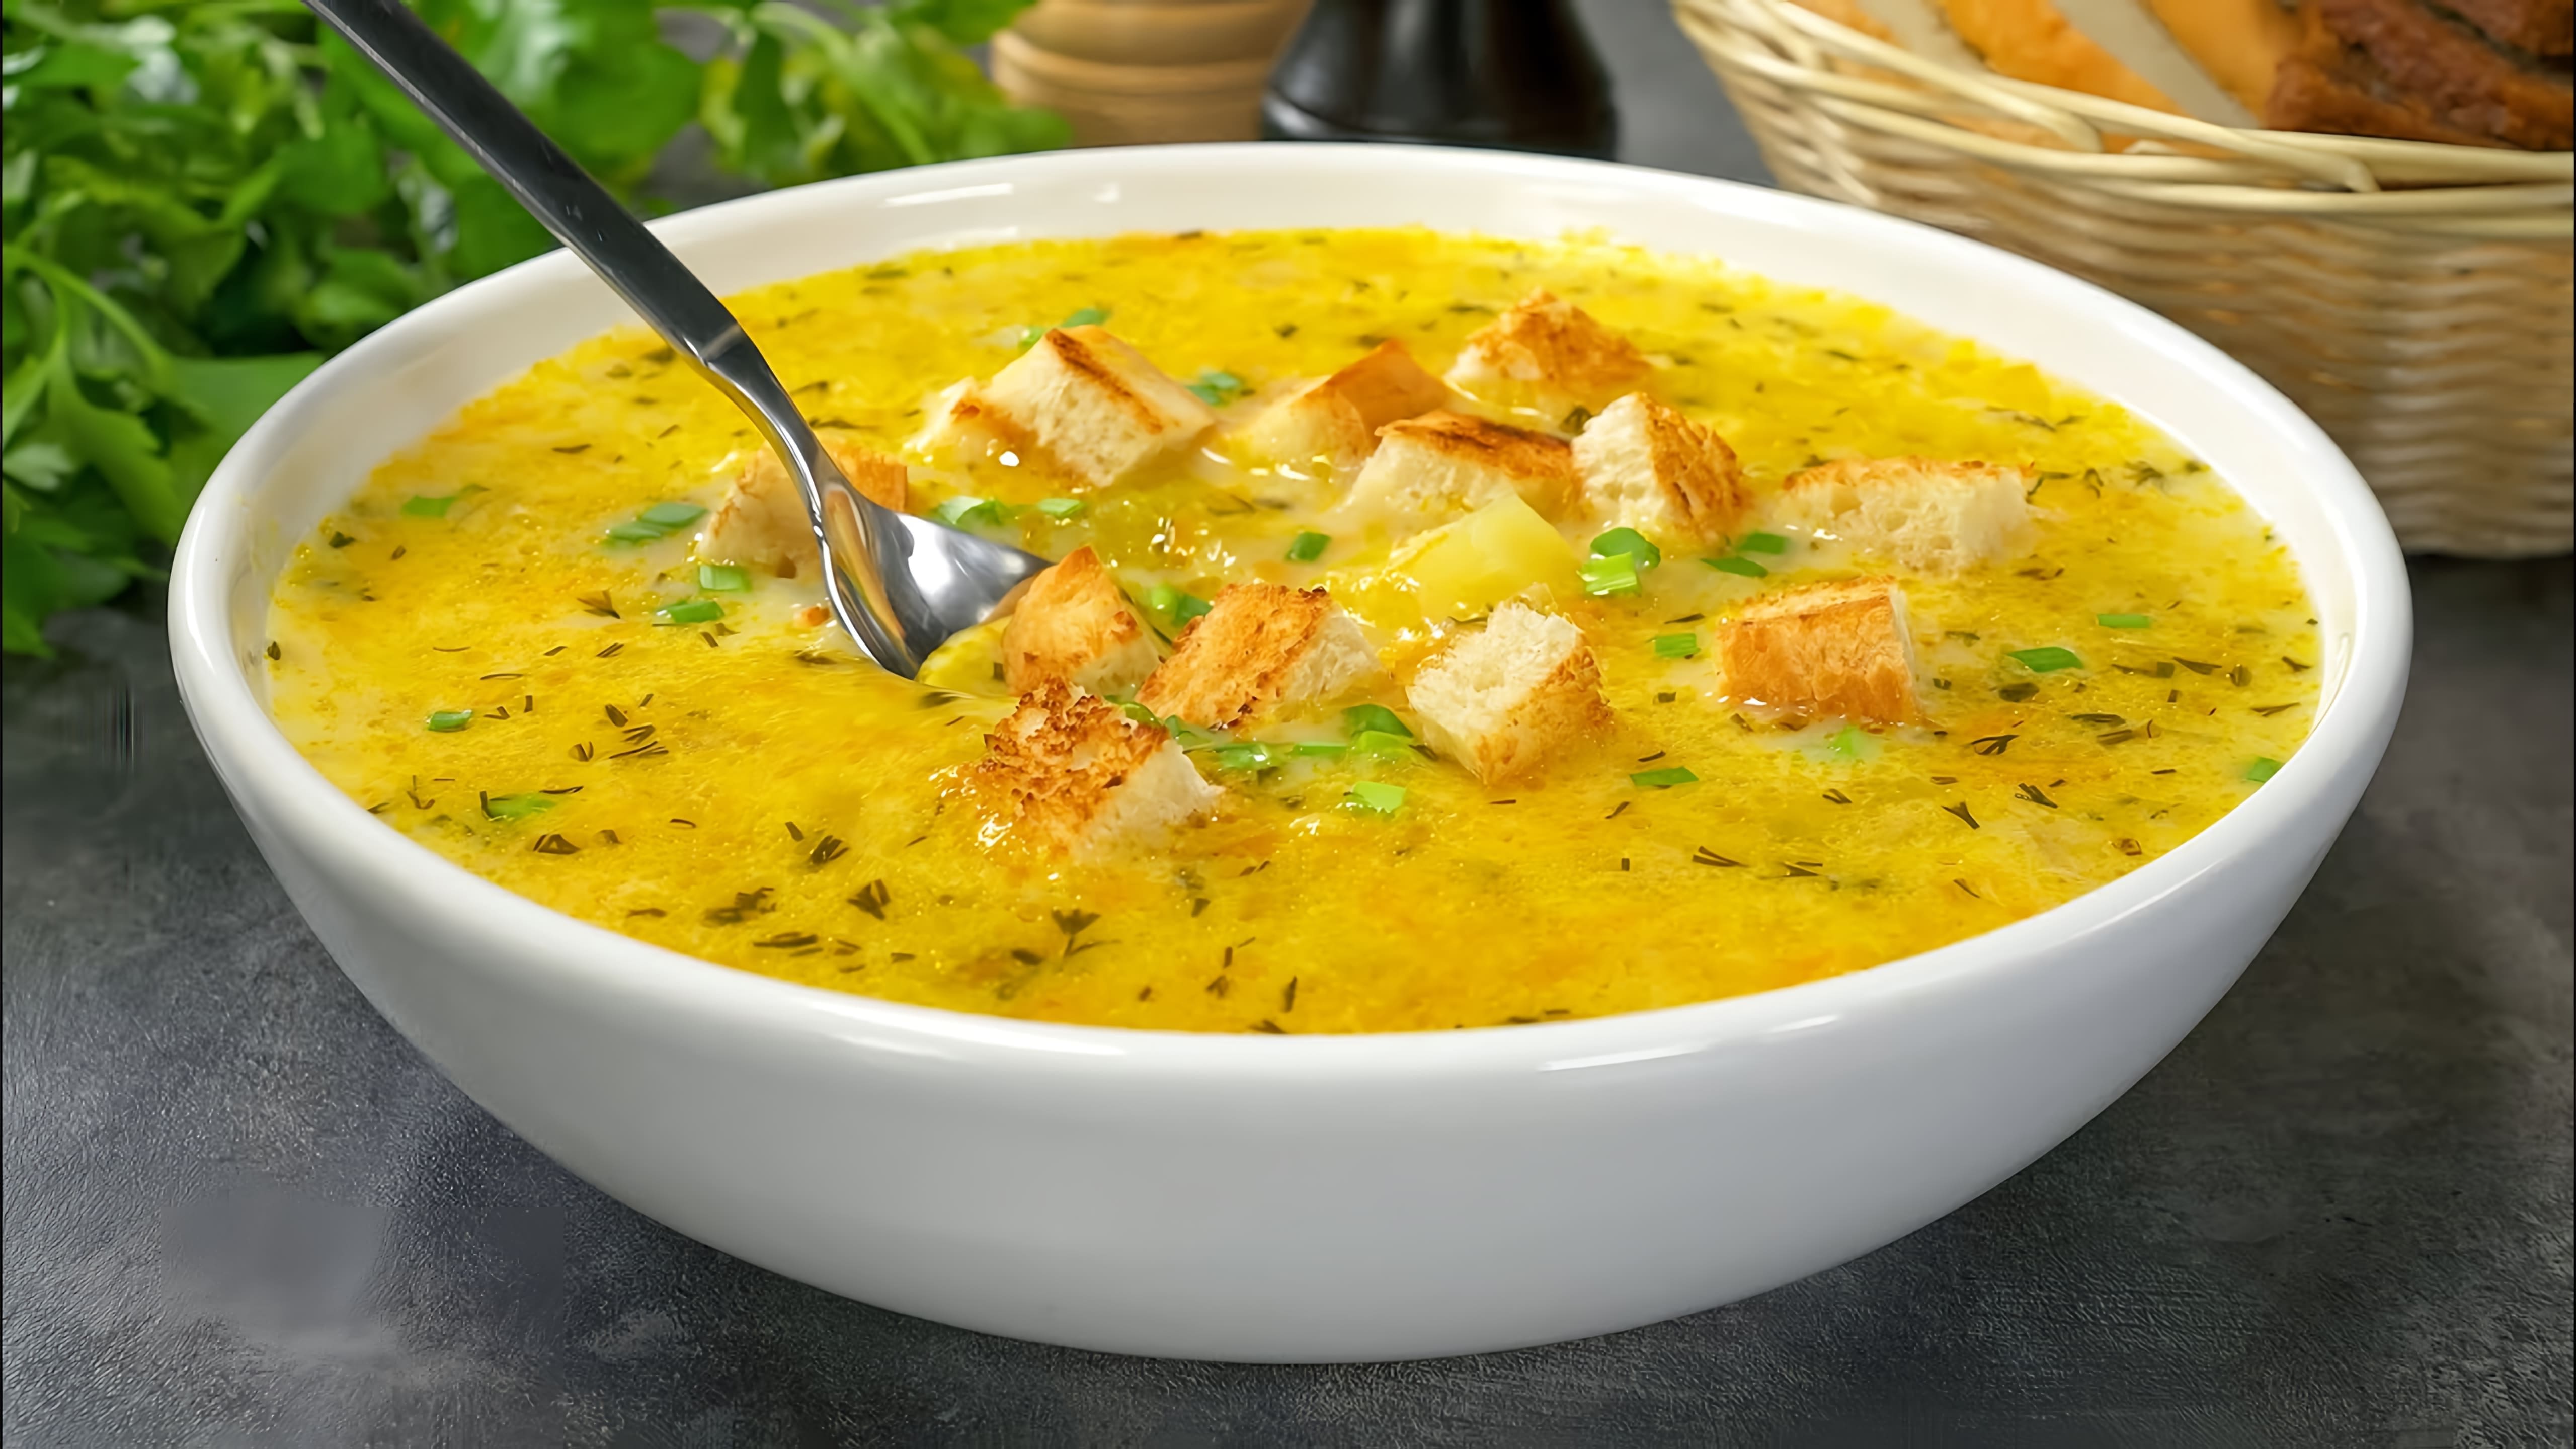 В этом видео демонстрируется рецепт приготовления вкусного лукового супа с плавленым сыром